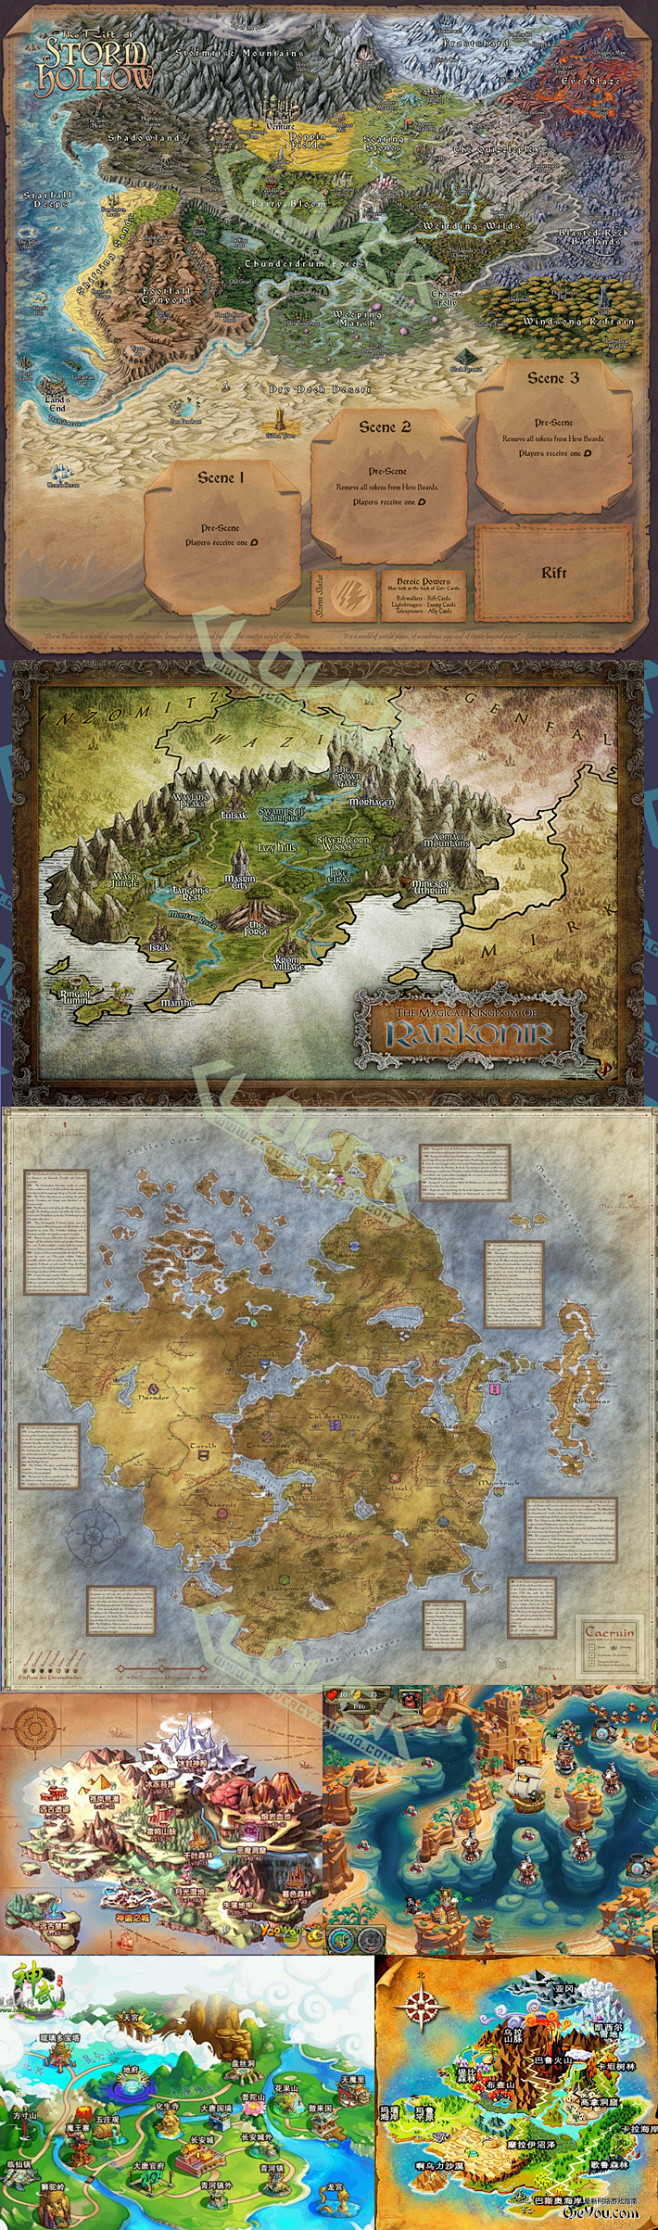 游戏美术地图设计参考素材 游戏CG地图 ...